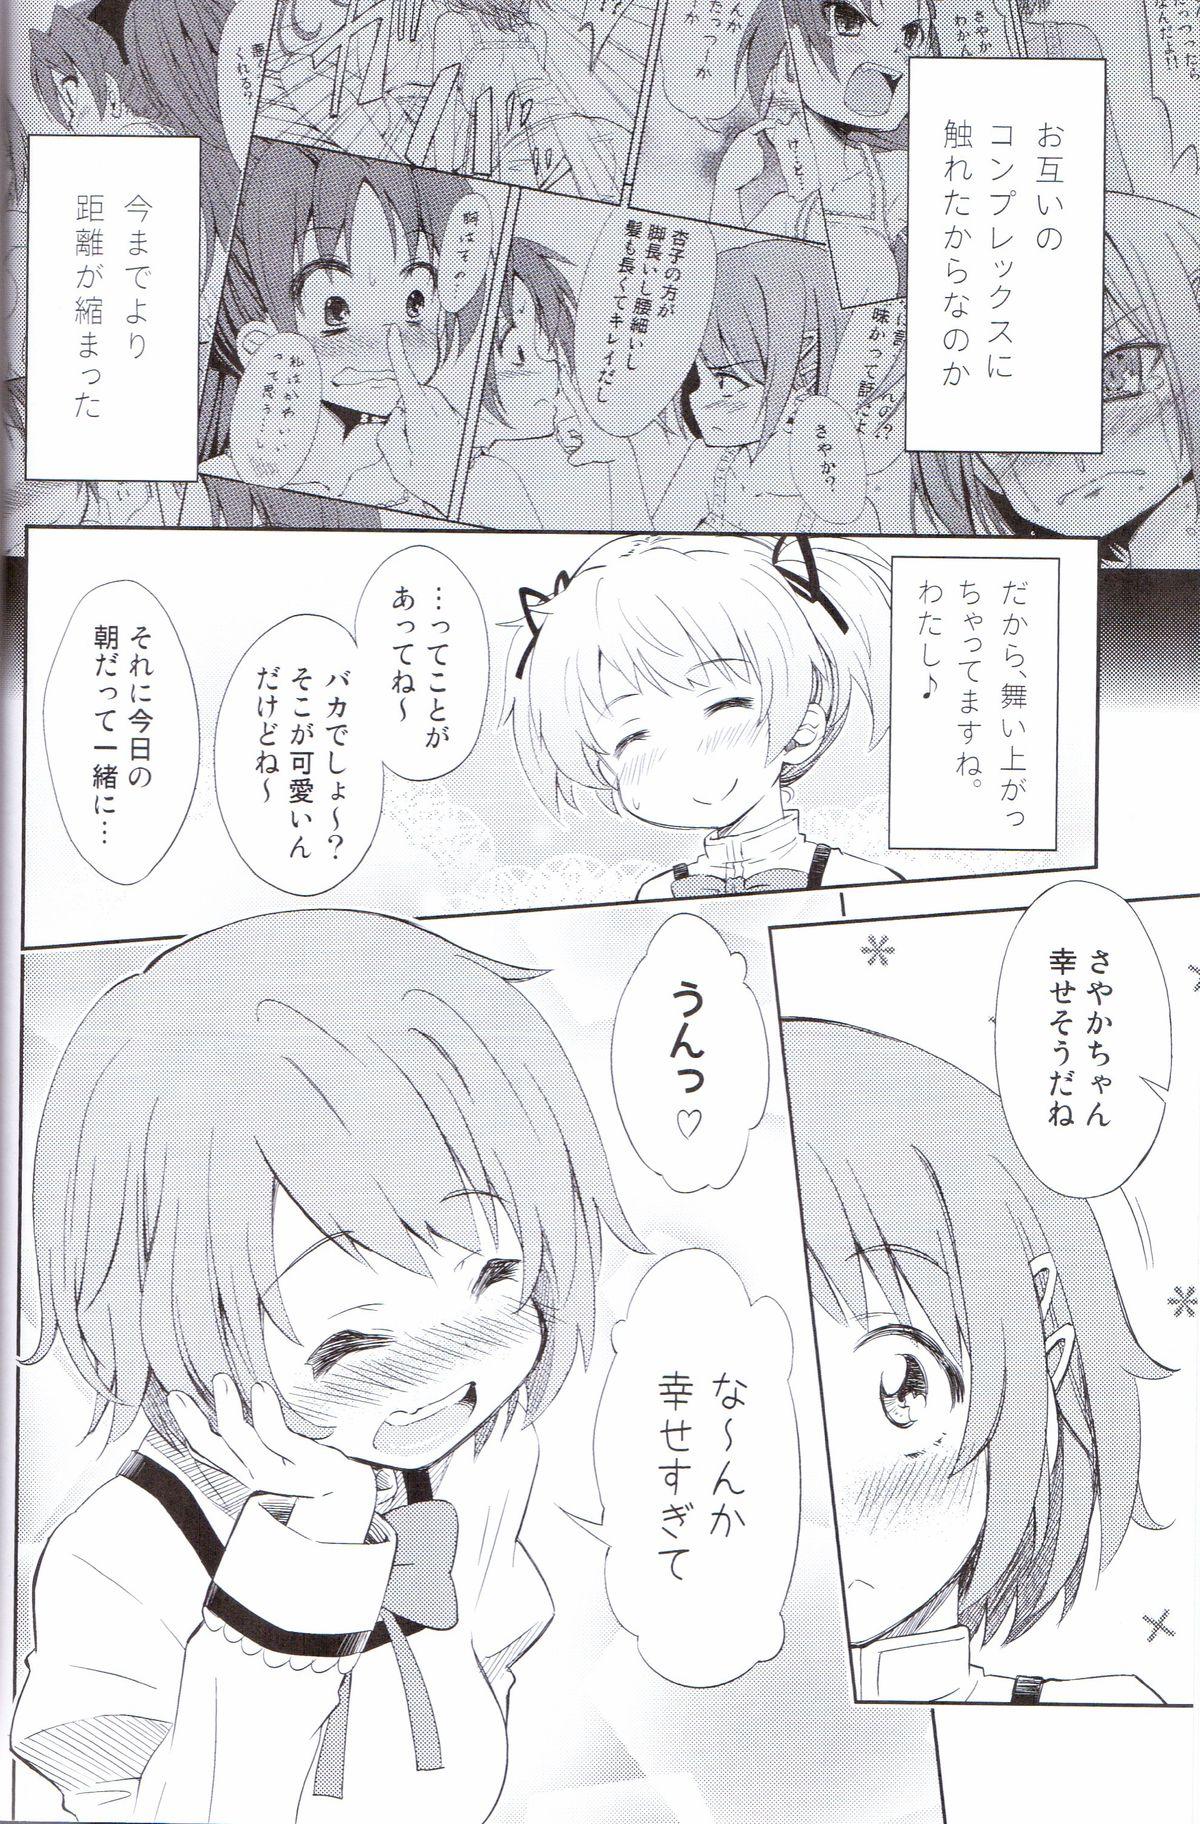 Scissoring Lovely Girls' Lily vol. 5 - Puella magi madoka magica Fetiche - Page 5